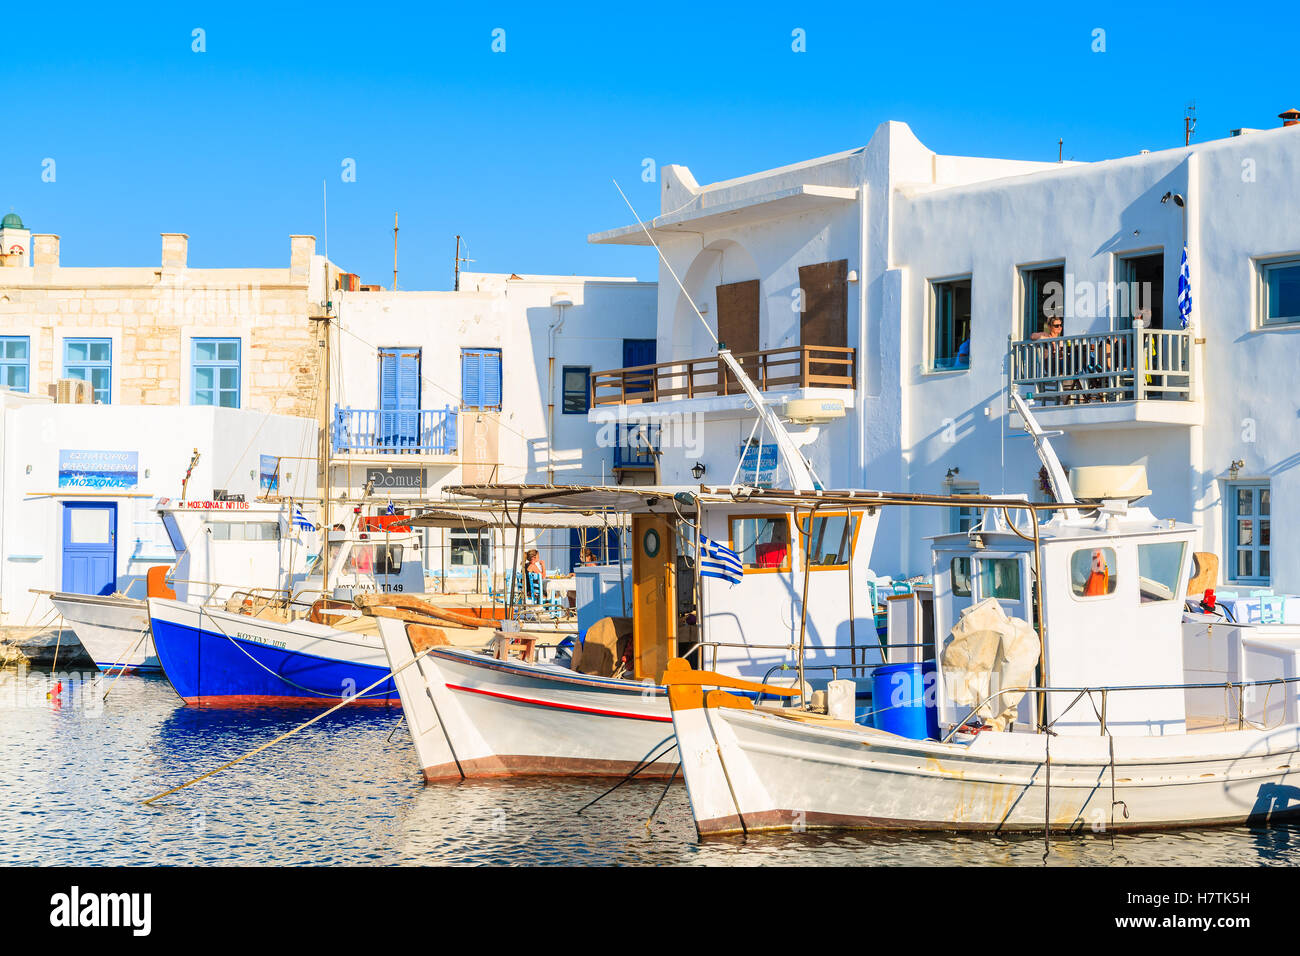 NAOUSSA, PAROS ISLAND - 17 MAI 2016 : maisons blanches de Naoussa et de bateaux de pêche dans le port sur l'île de Paros, Grèce. Banque D'Images